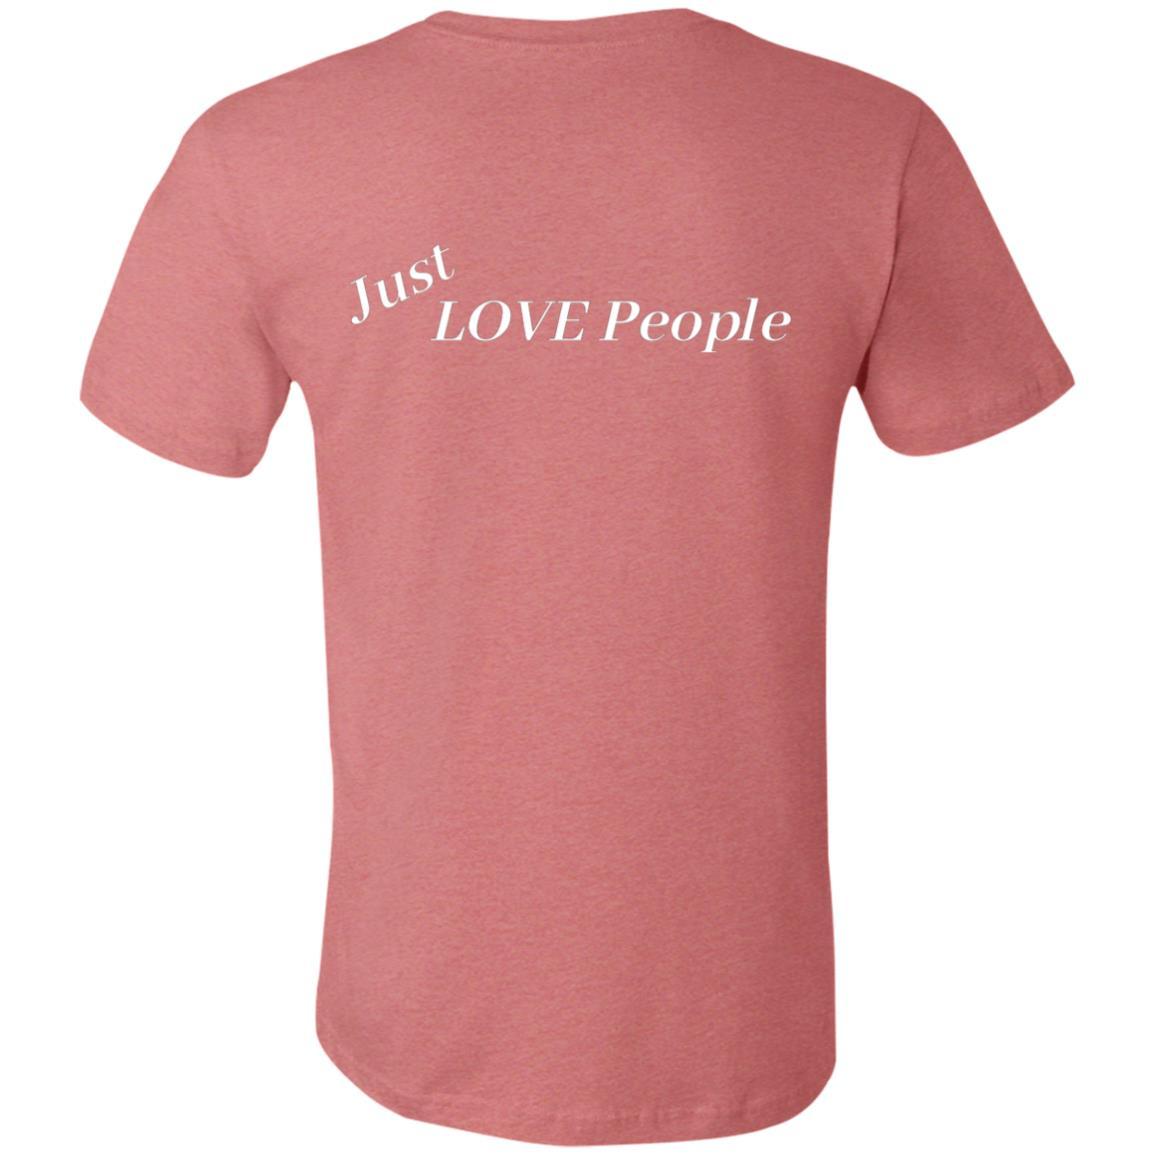 Just Love People Unisex Tee - Jennifer Kay Design